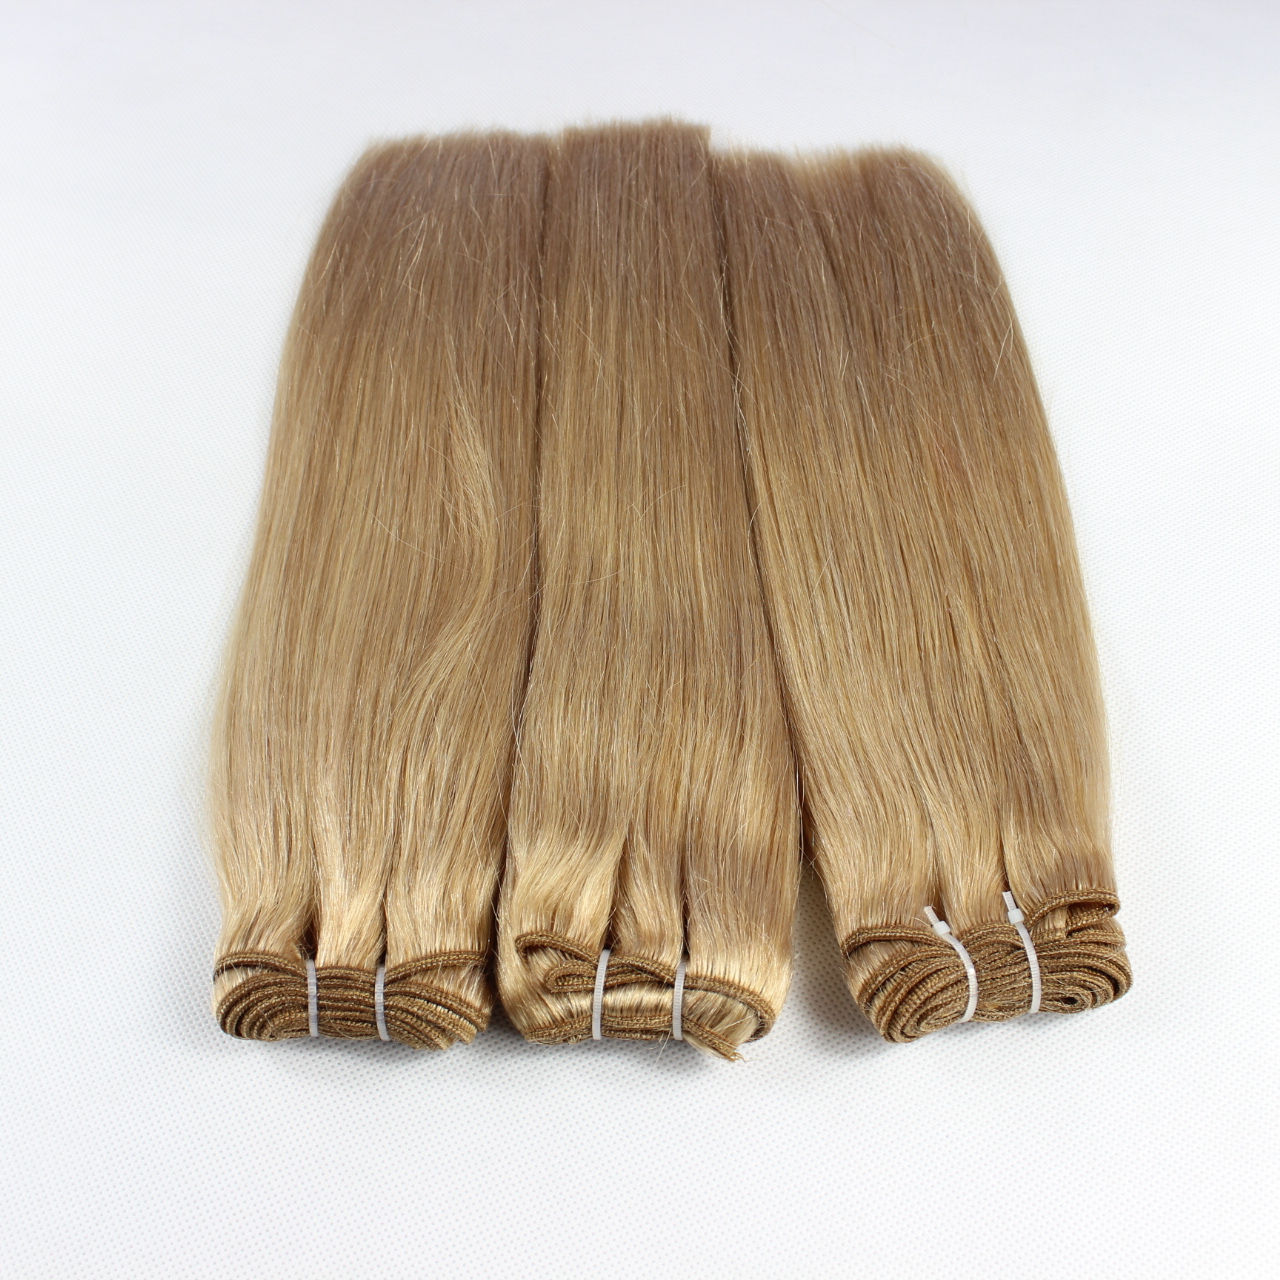 Chocolate hair weave 18 inch,fashion idol hair weave,dream weave remi hairHN350